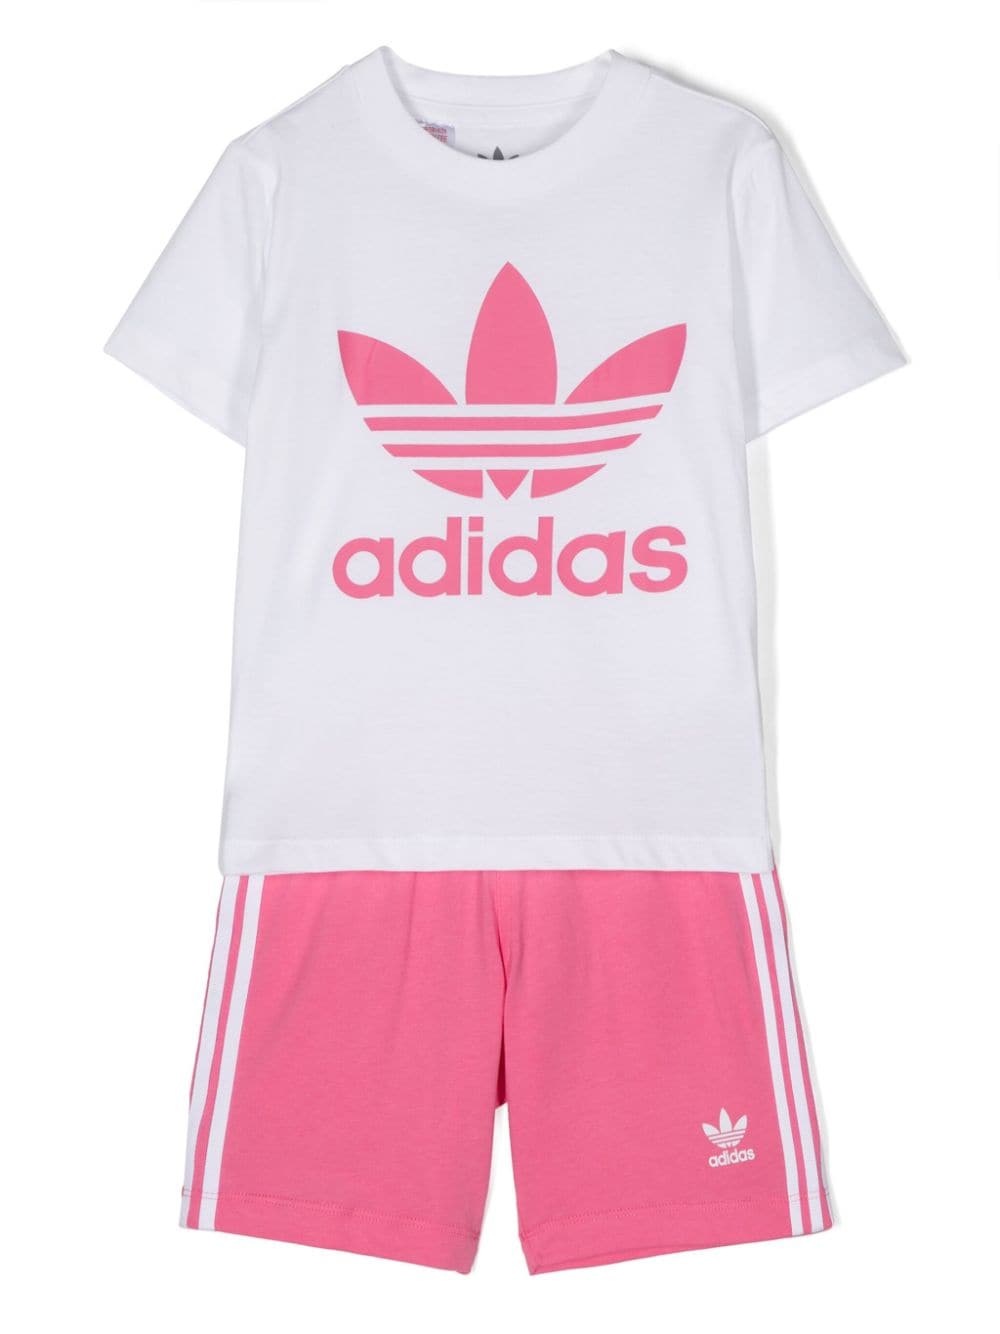 adidas Kids Trefoil cotton shorts set - Pink von adidas Kids